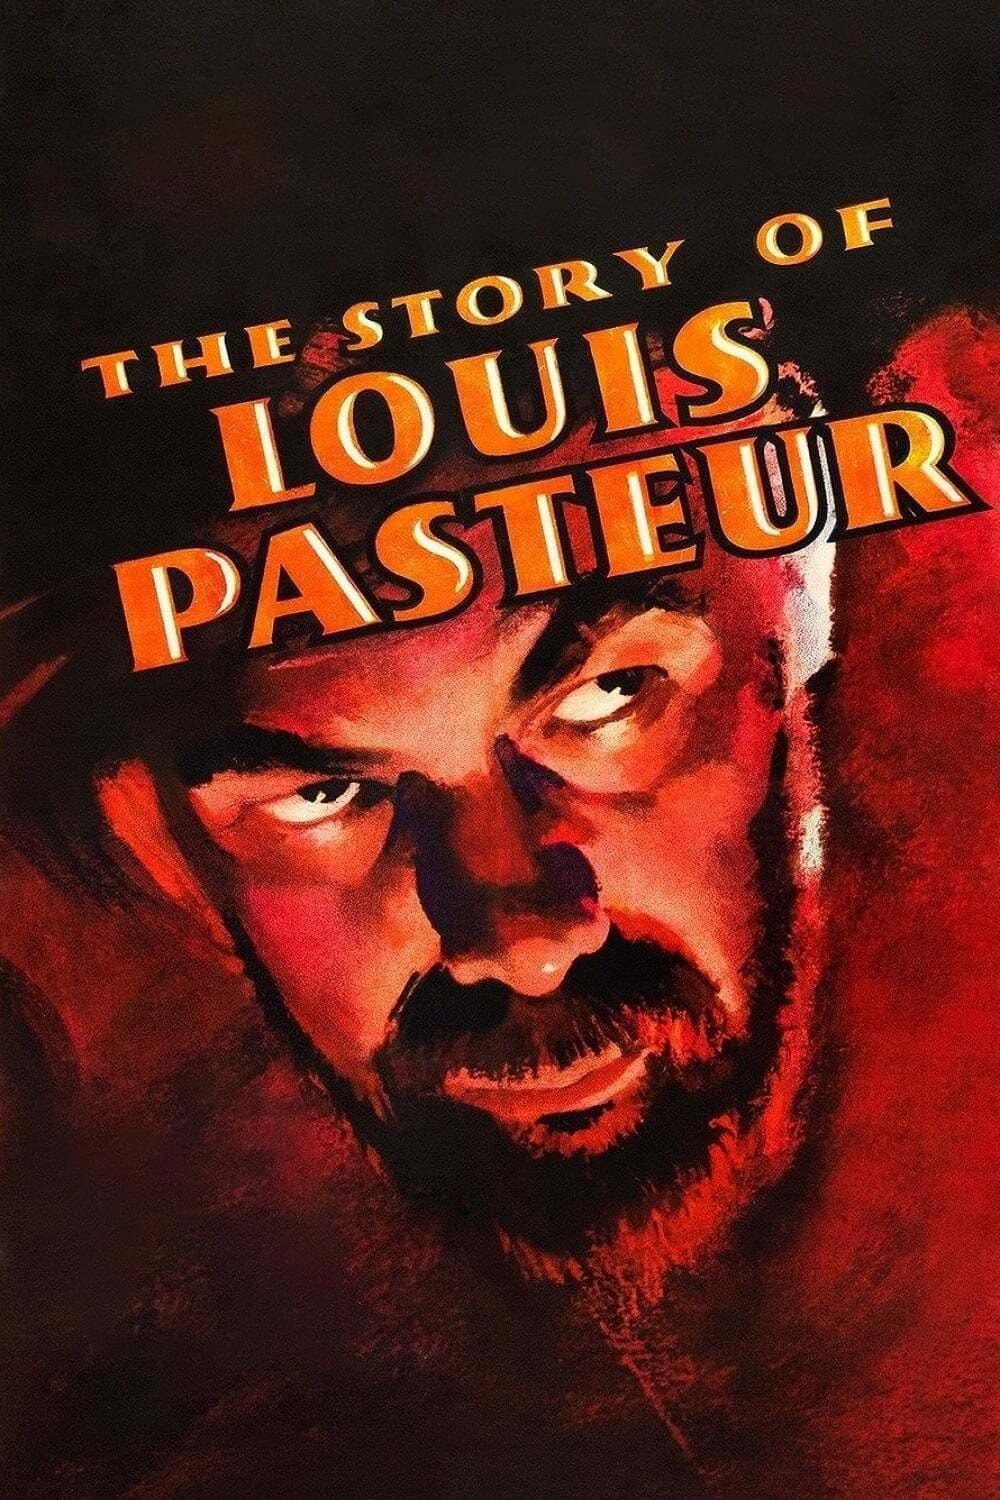 Louis Pasteur poster